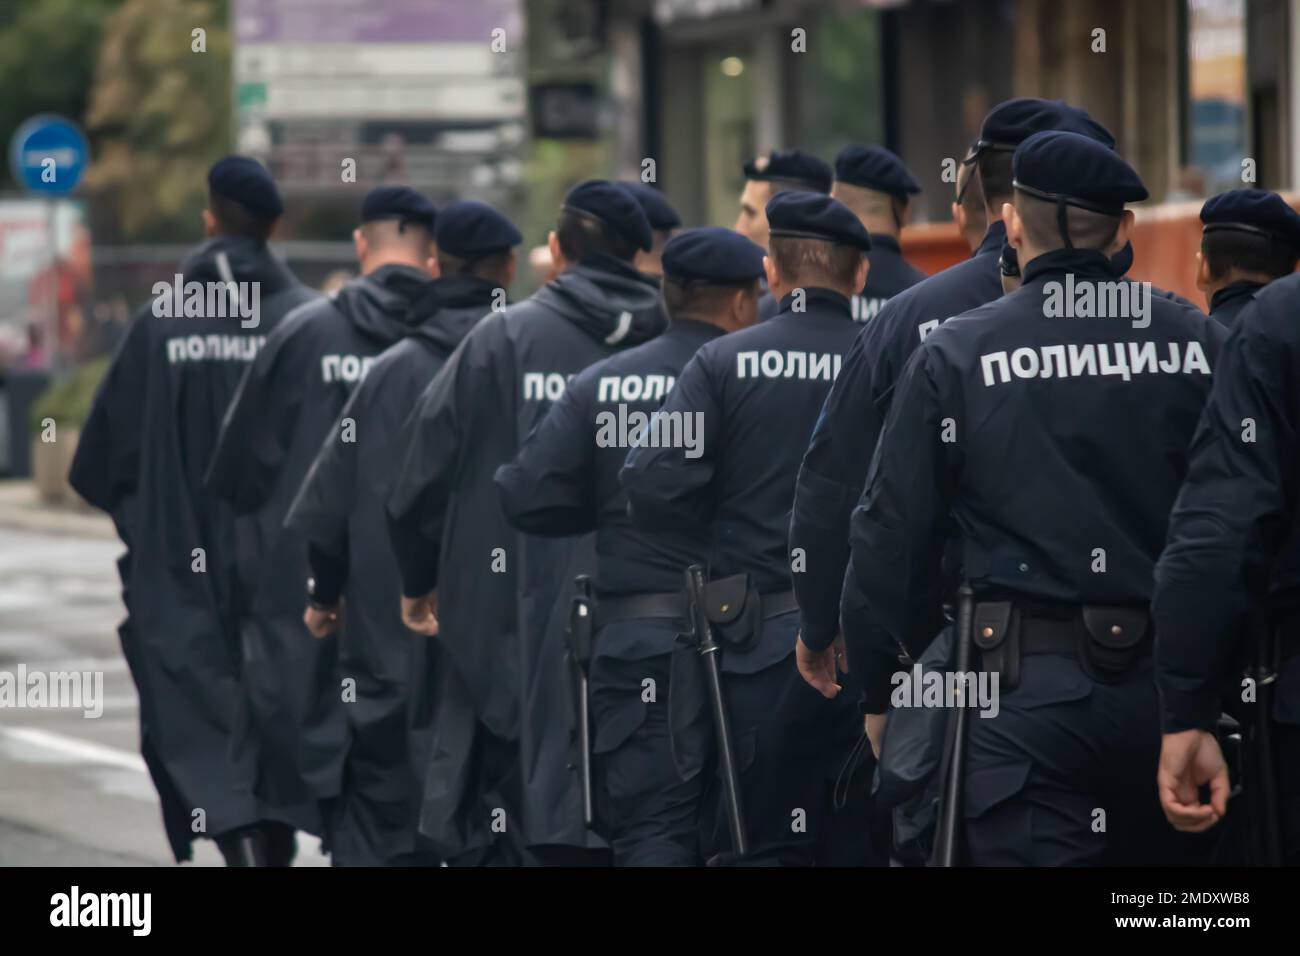 Polizeikräfte und Angehörige von Sondereinheiten der Aufständischen Polizei in Uniformen und Straßensperren Stockfoto